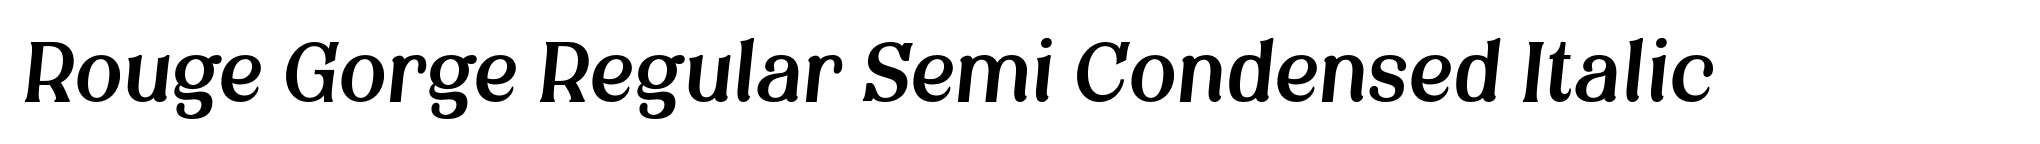 Rouge Gorge Regular Semi Condensed Italic image